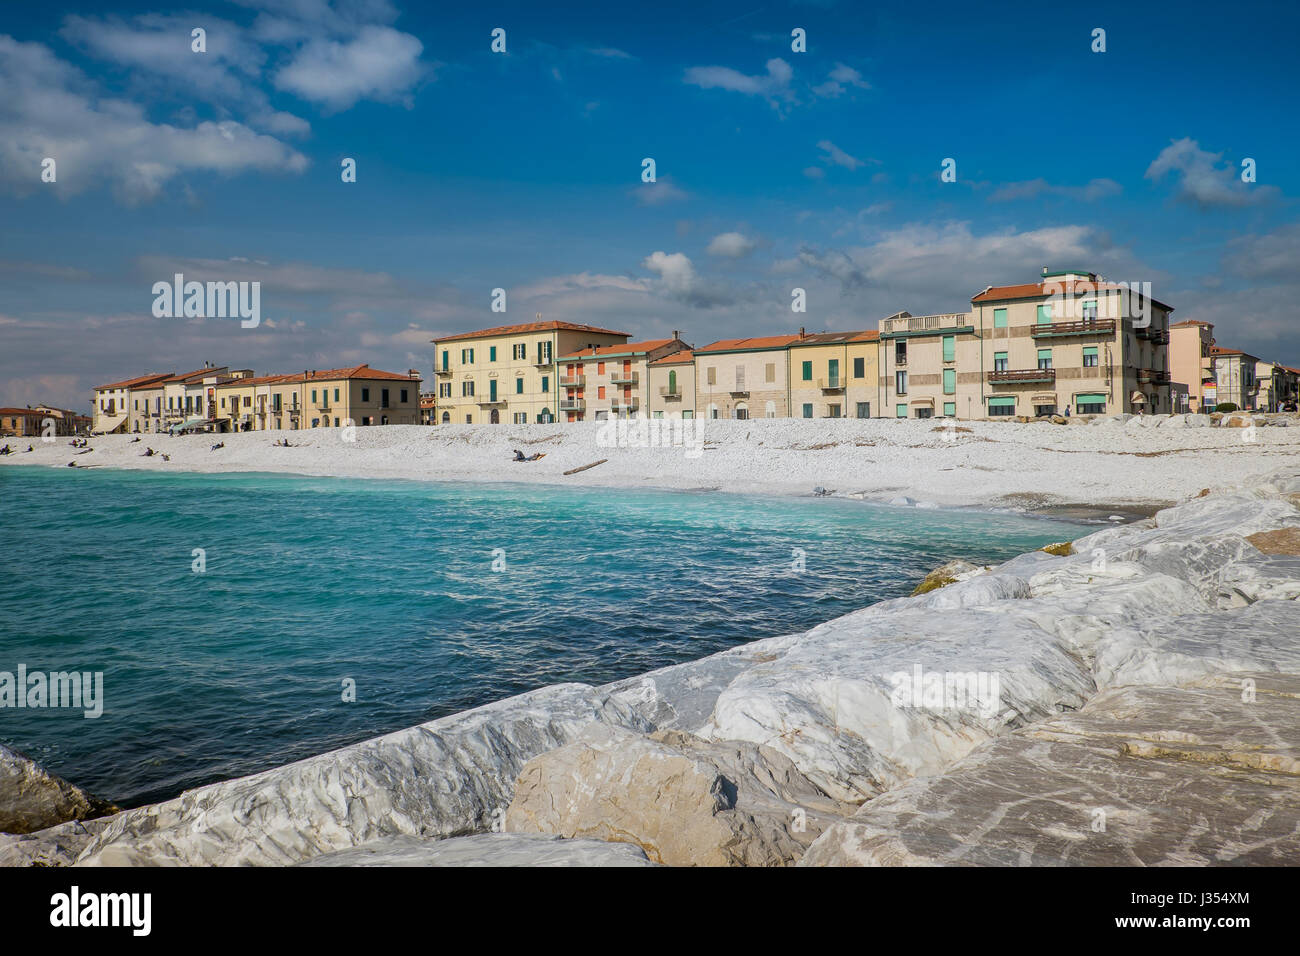 MARINA DI PISA, ITALIE - Avril 24, 2017 : vue sur la mer et la plage de galets blancs de Marina di Pisa Toscane Banque D'Images